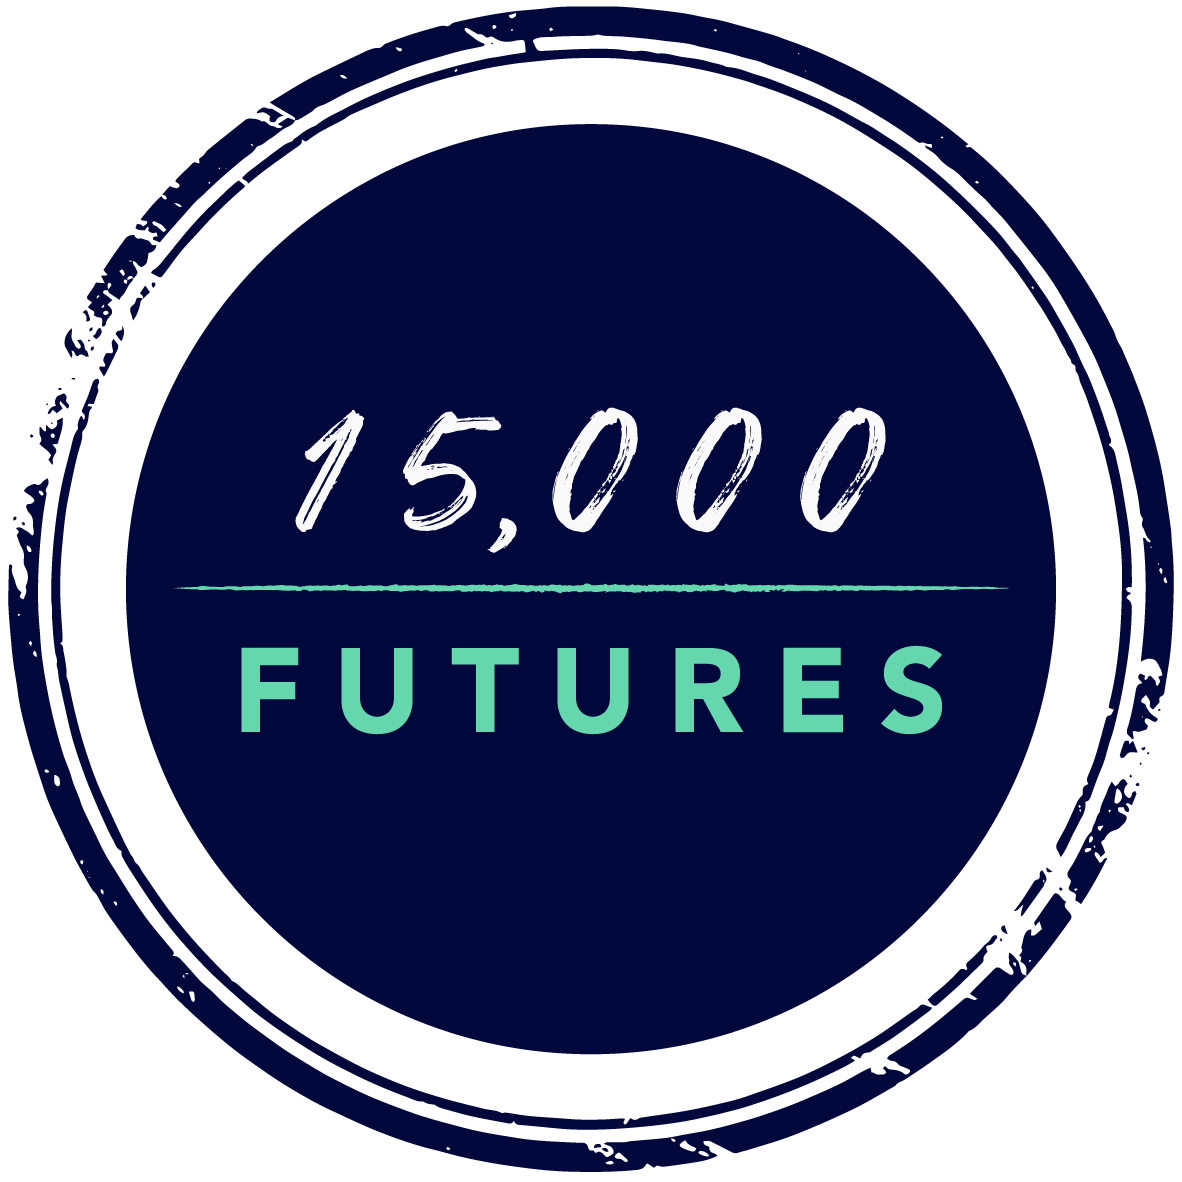 15,000 Futures stamp logo